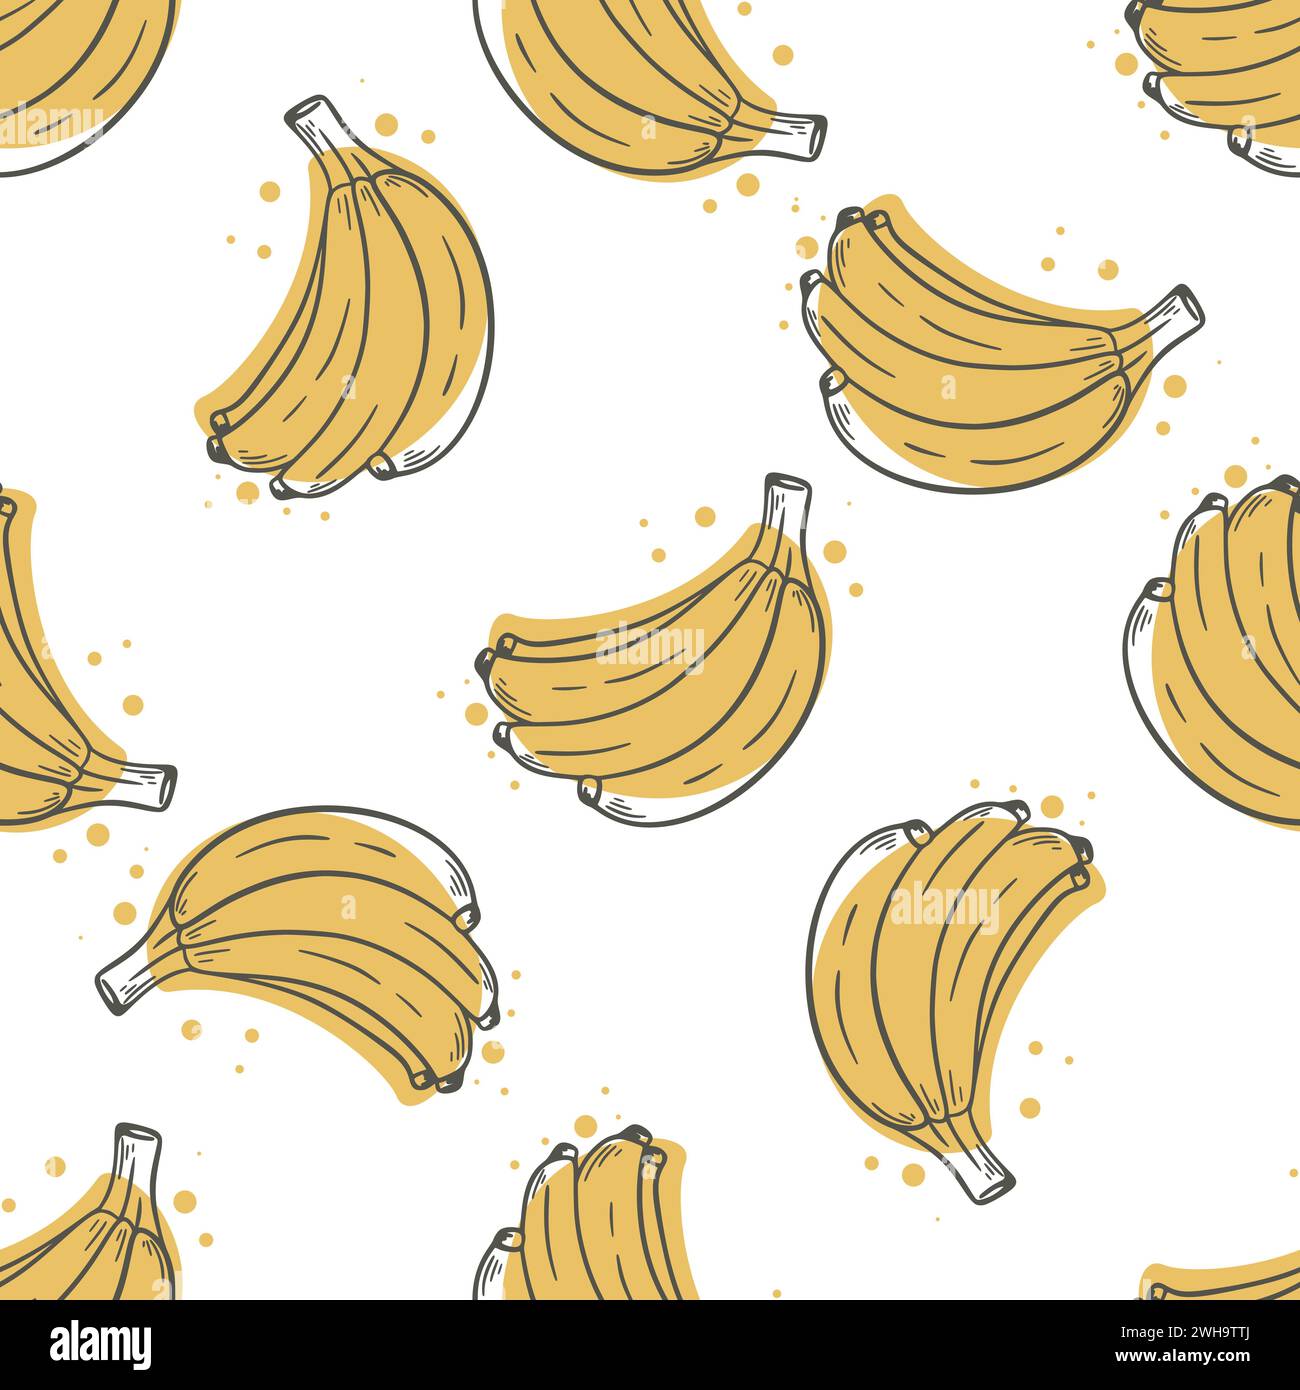 Immagine di sfondo delle banane gialle mature. Motivo senza cuciture con mazzo di banana inciso a mano a inchiostro. Stampa di frutta tropicale per tessuti, imballaggi, carta e design Illustrazione Vettoriale